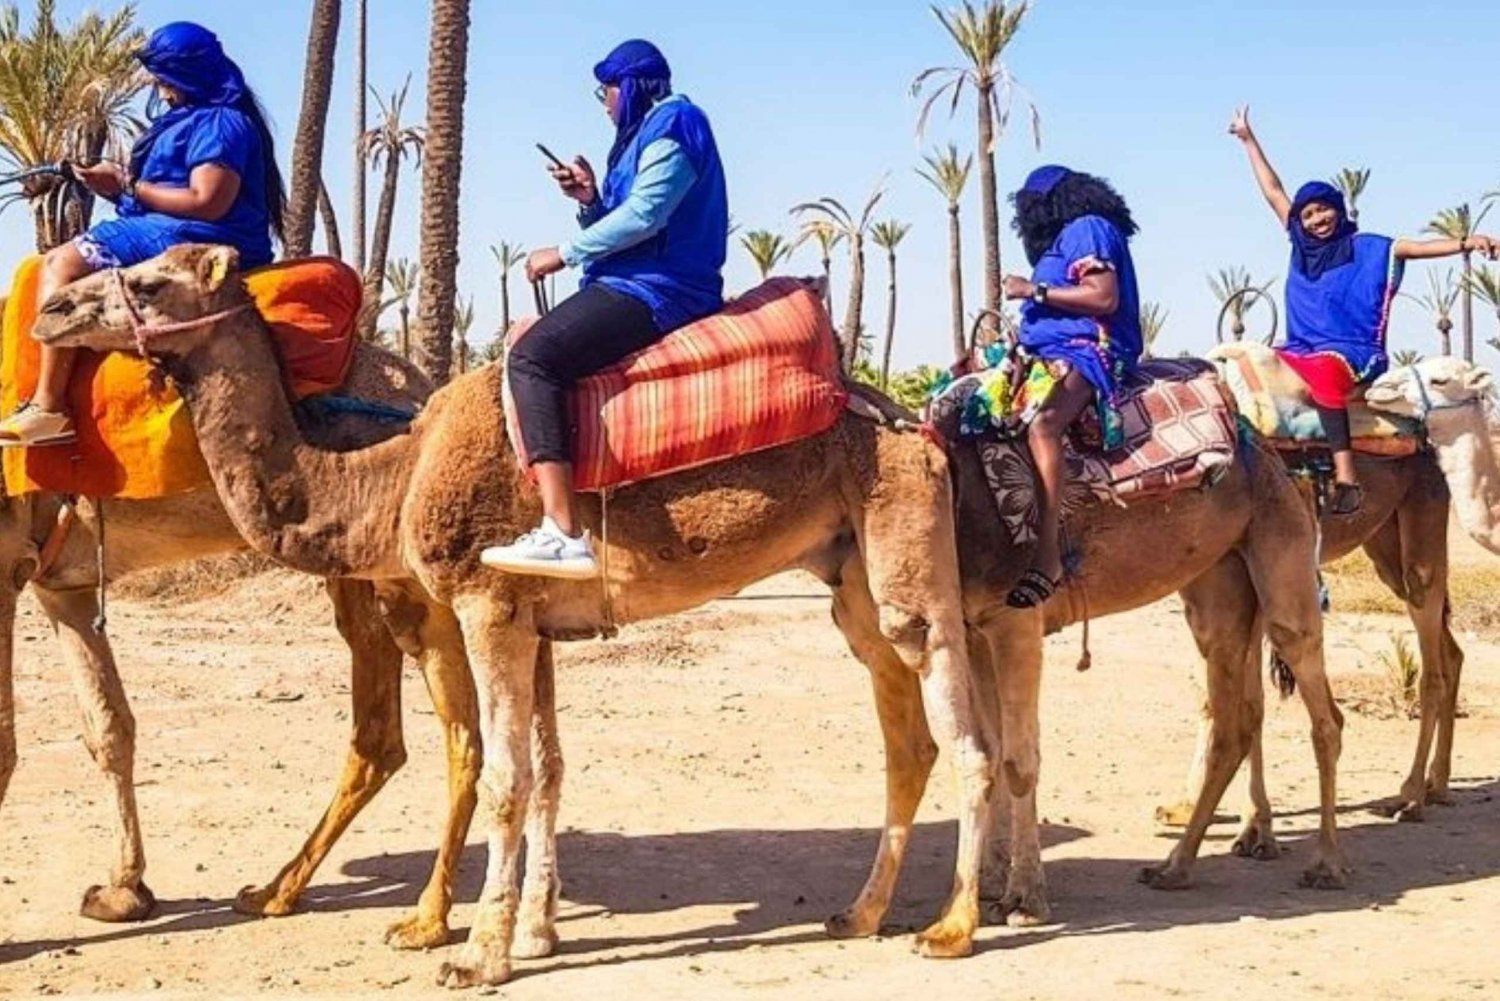 Passeio de camelo no palmeiral de Marrakech